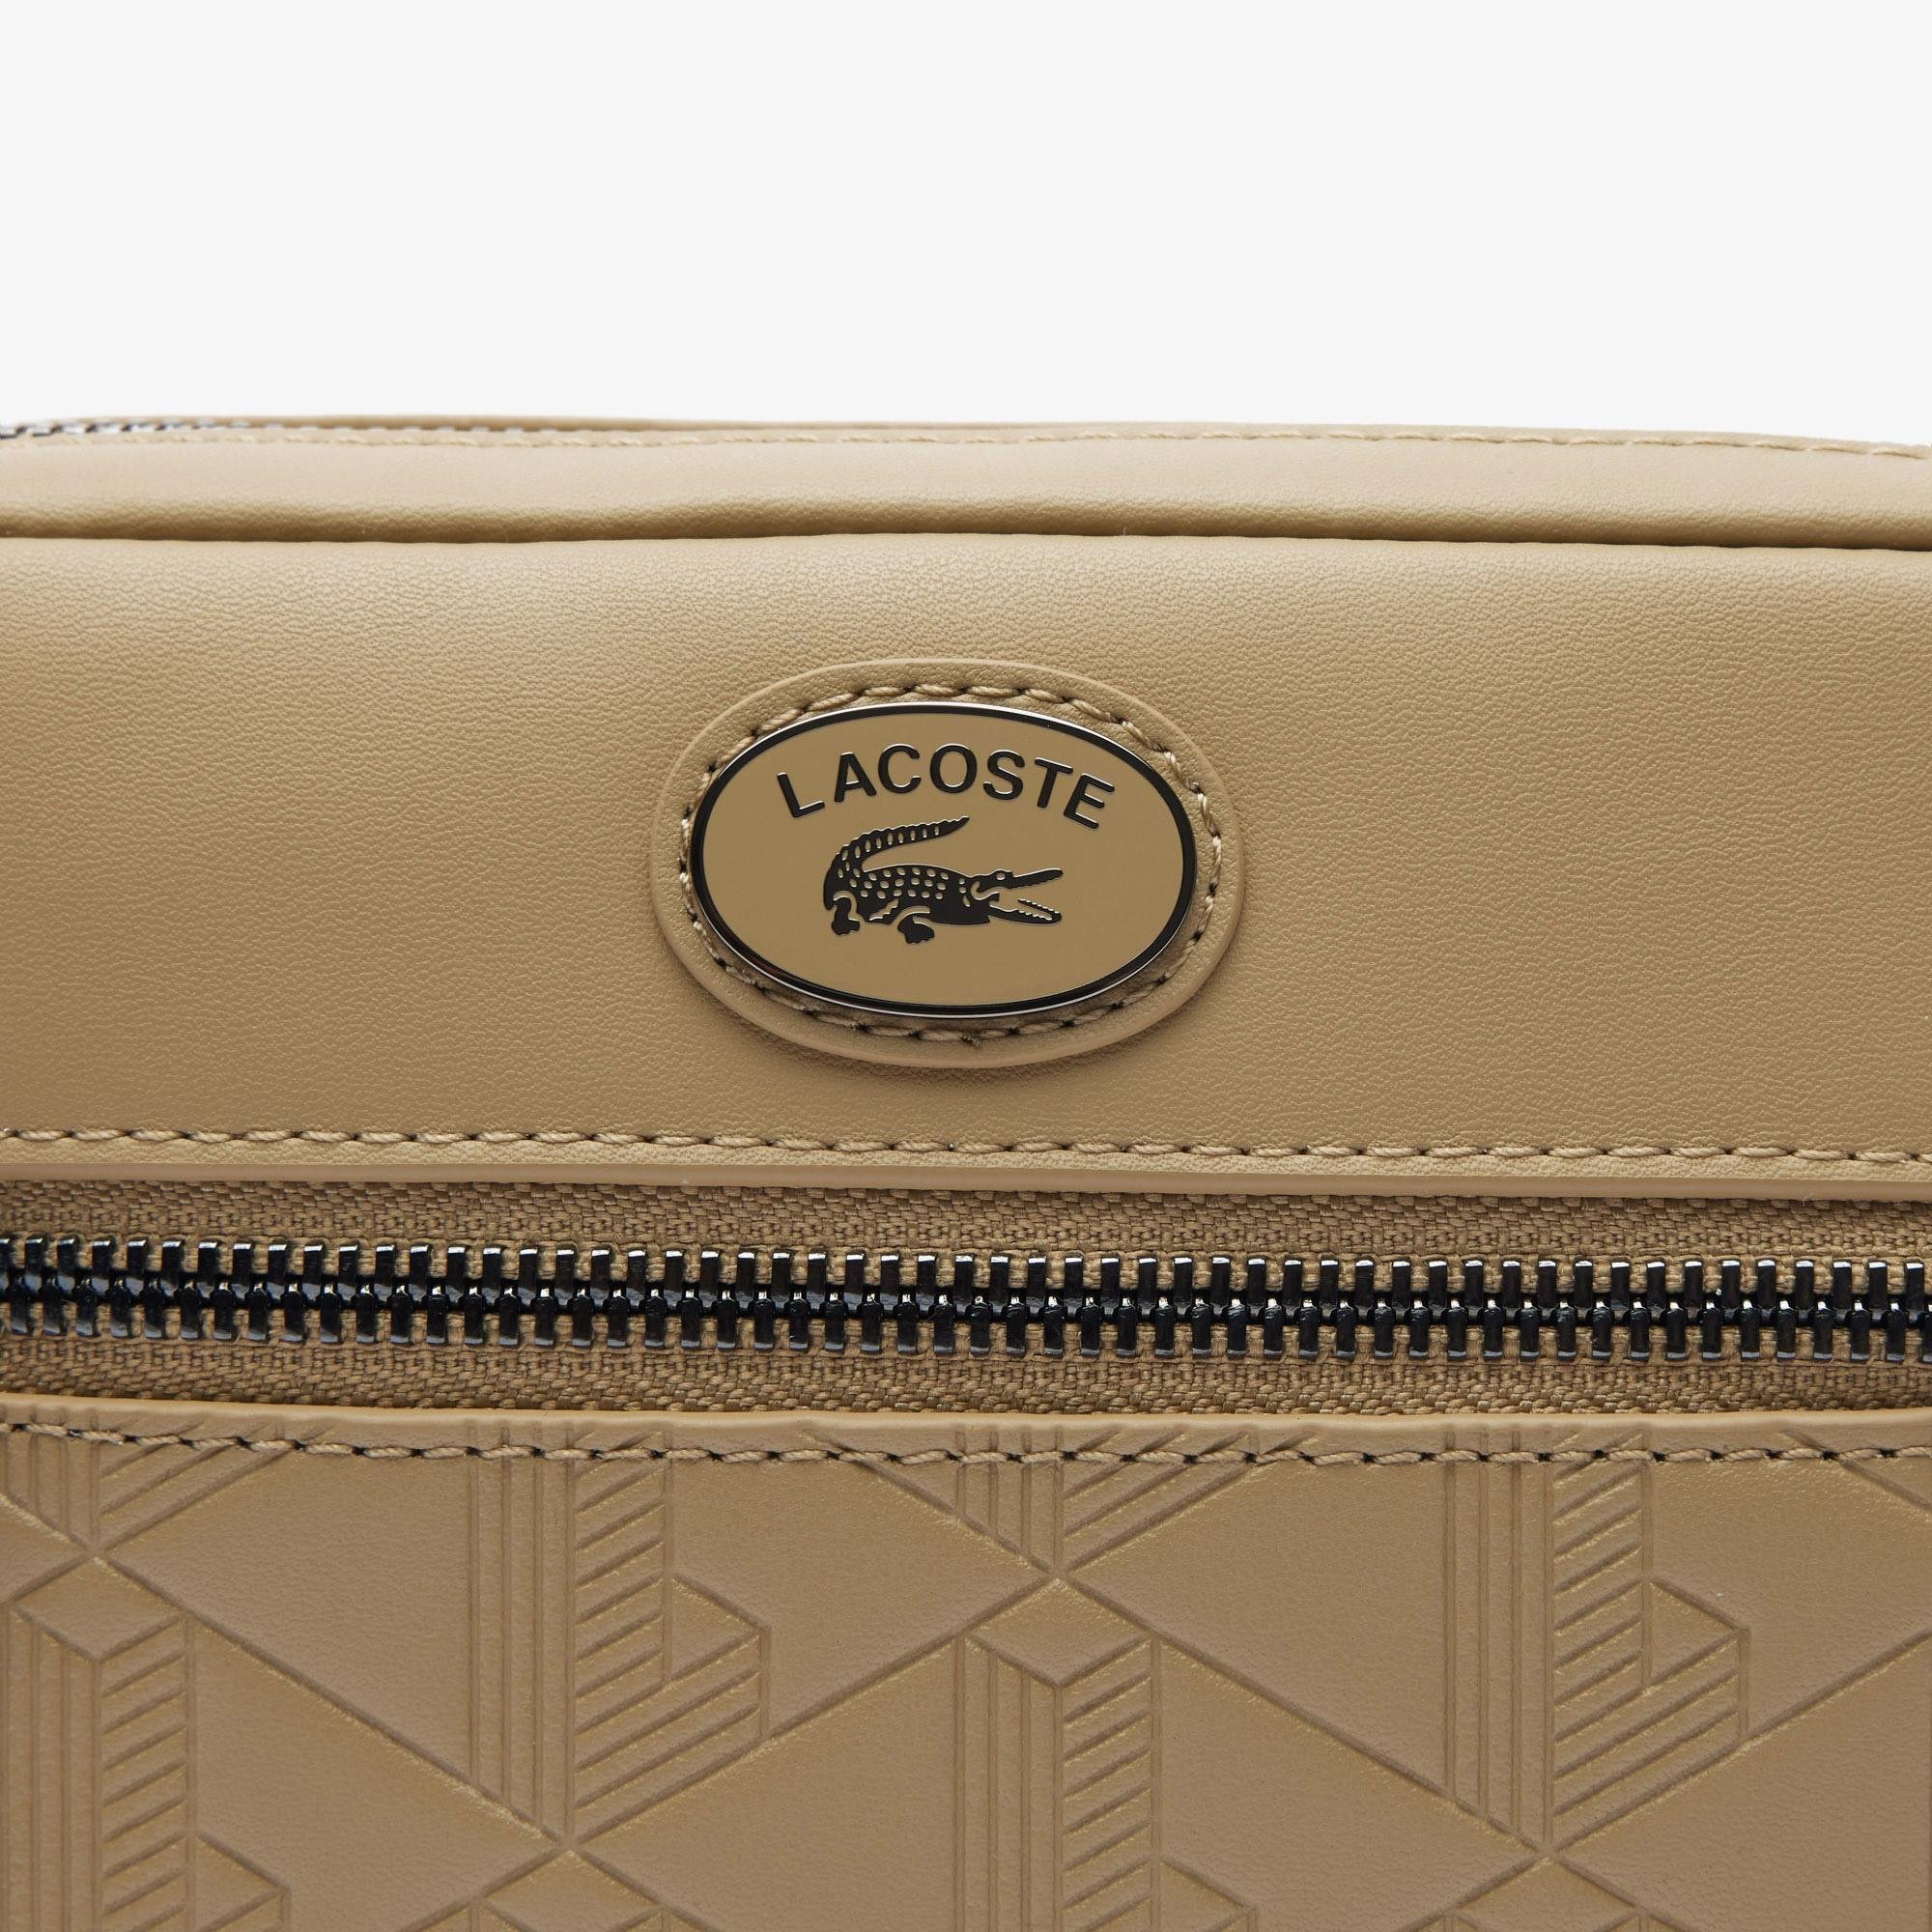 Lacoste Leather Monogram Print Shoulder Bag